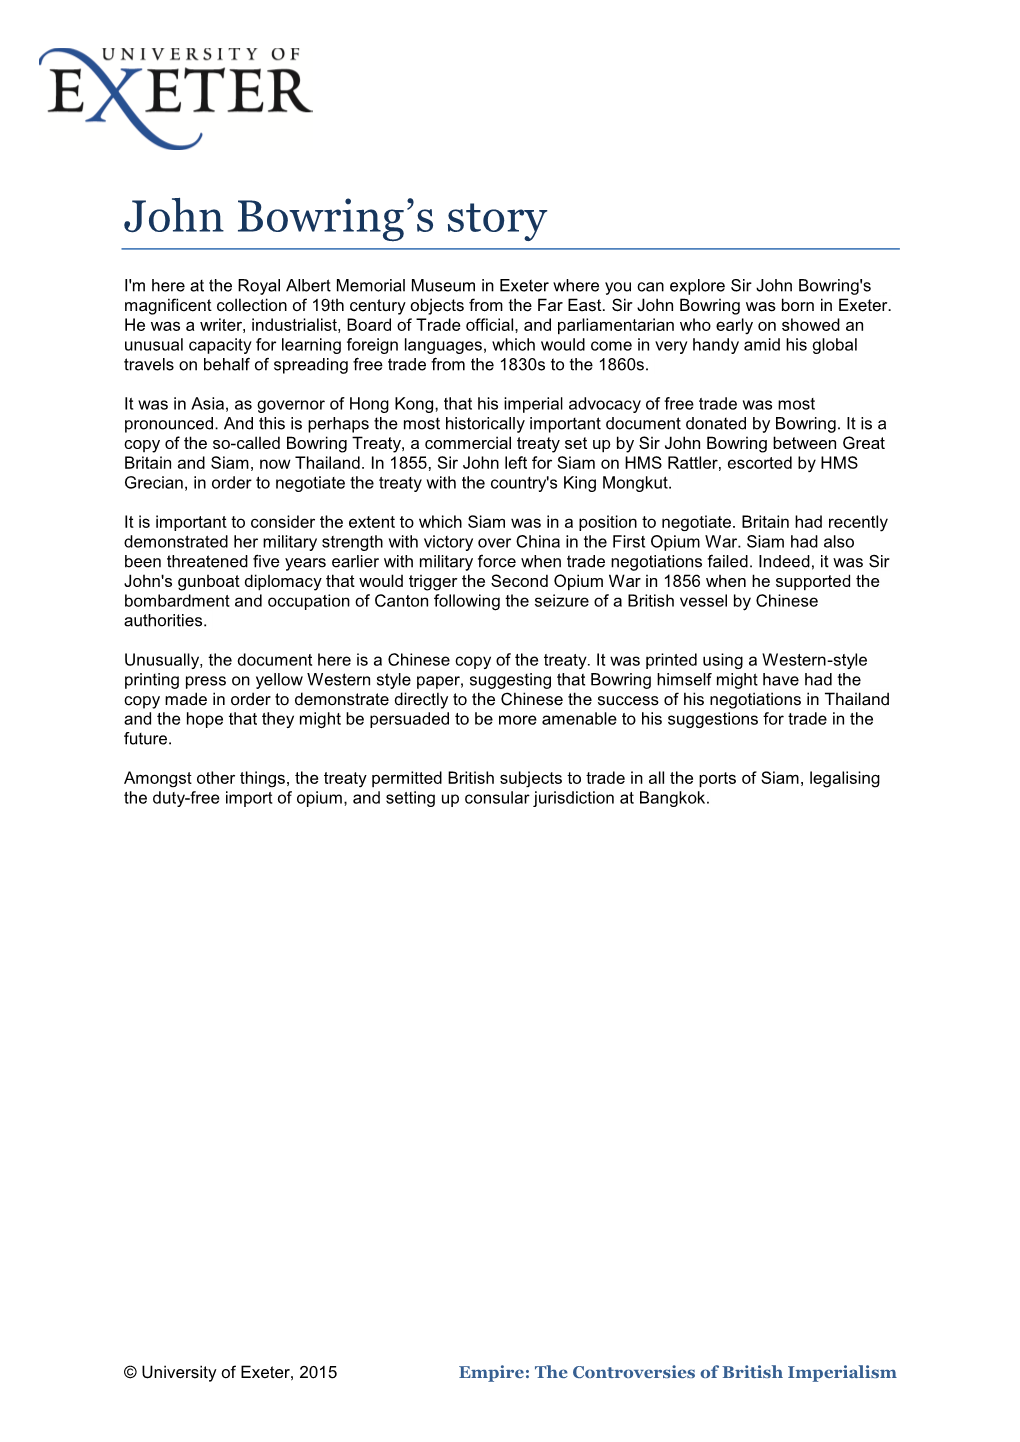 John Bowring's Story